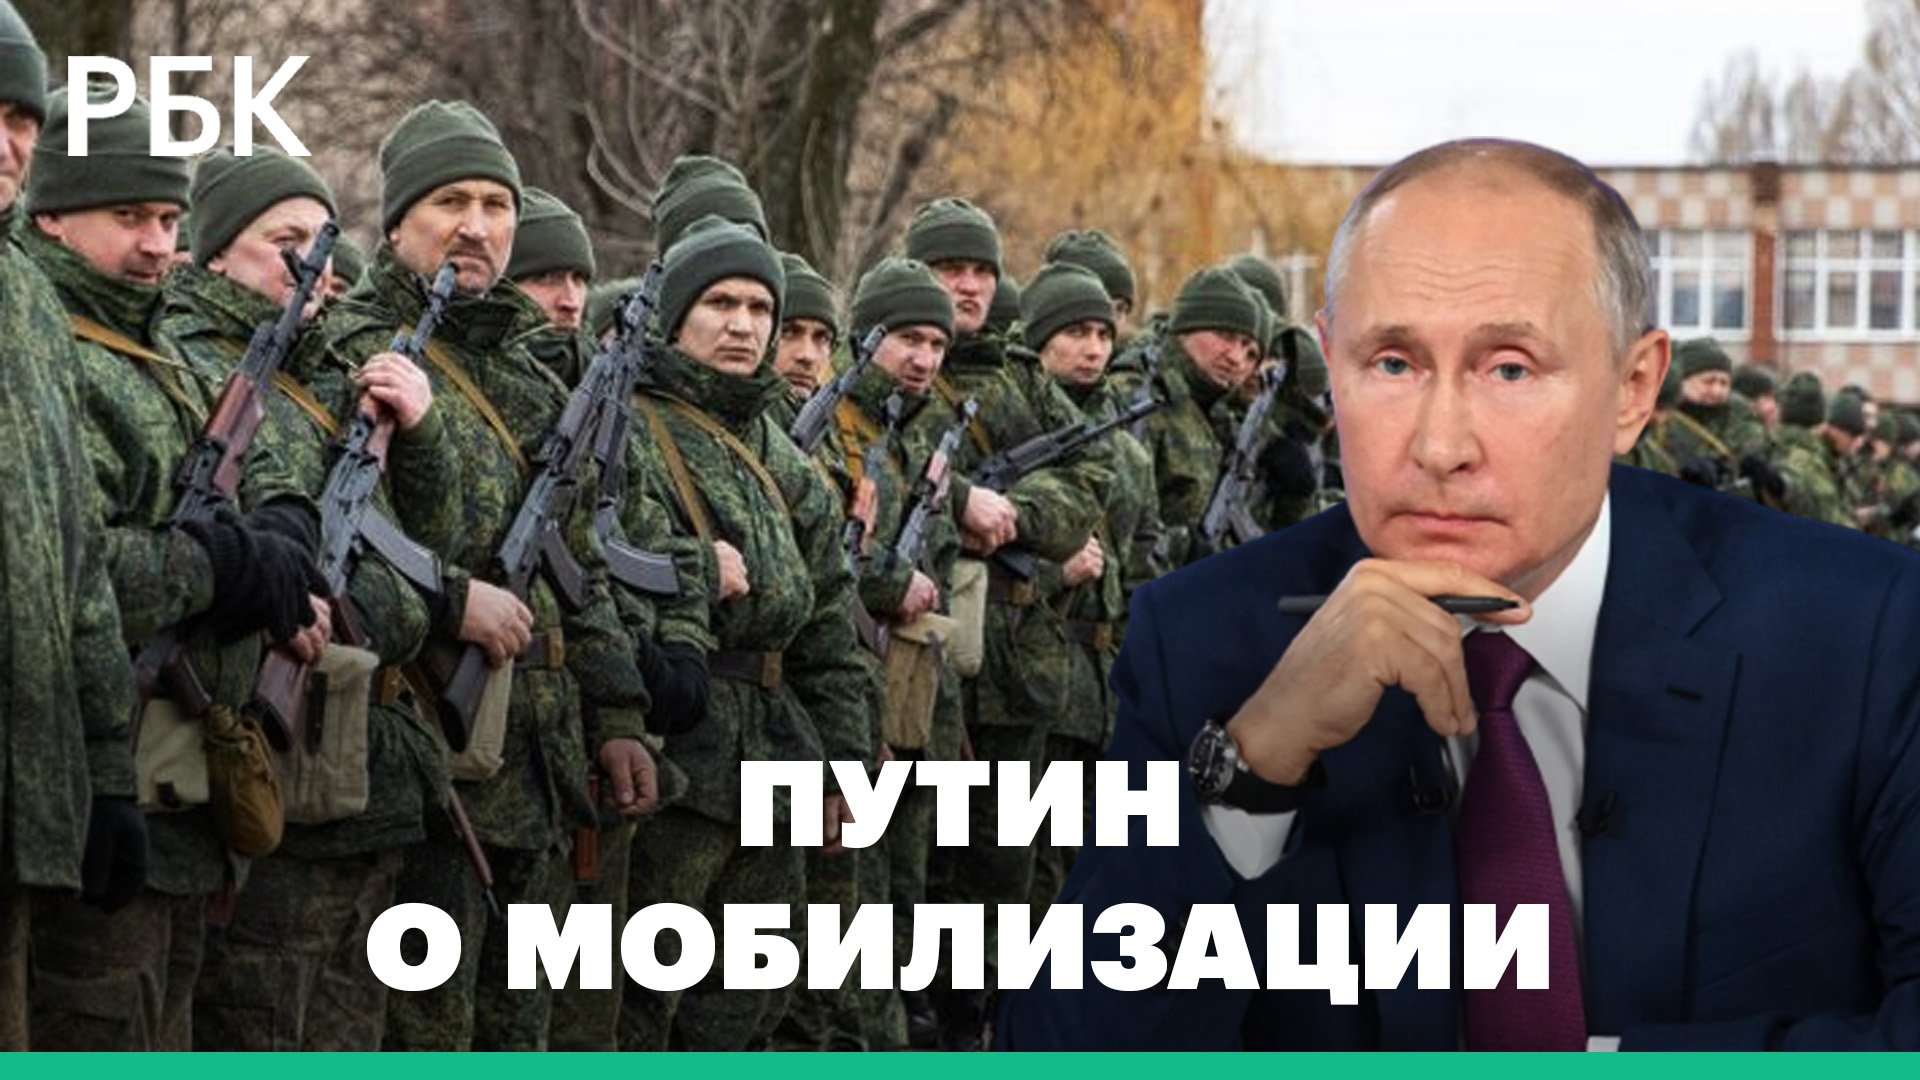 Мобилизация после выбора президента. Мобилизация Путина. Путинская мобилизация. Мобилизация в РФ.